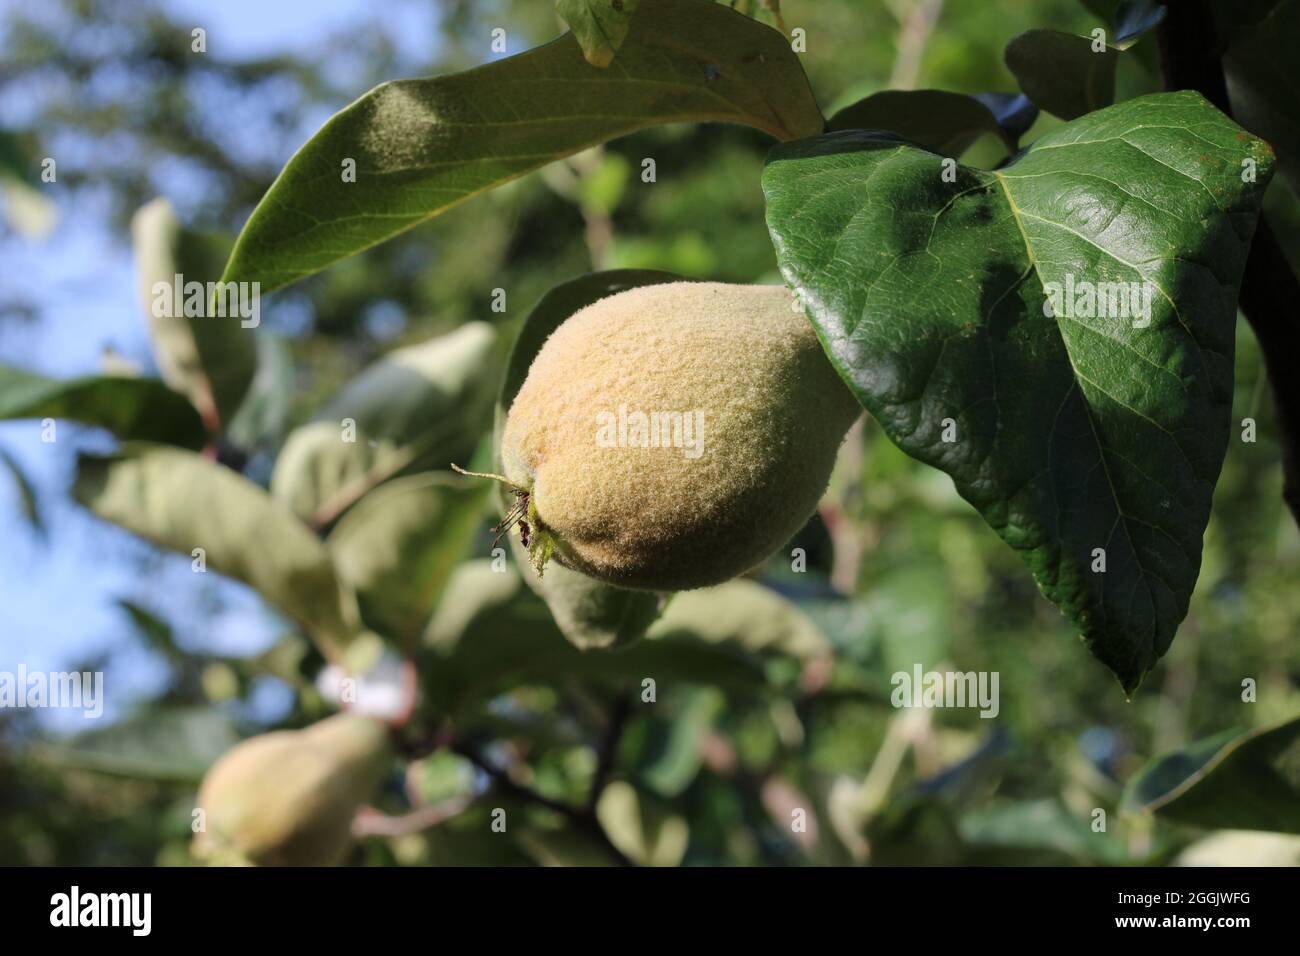 Die pelzige unreife Frucht des Quince-Baumes. Cydonia oblonga wächst in einer natürlichen Umgebung im Freien. Stockfoto